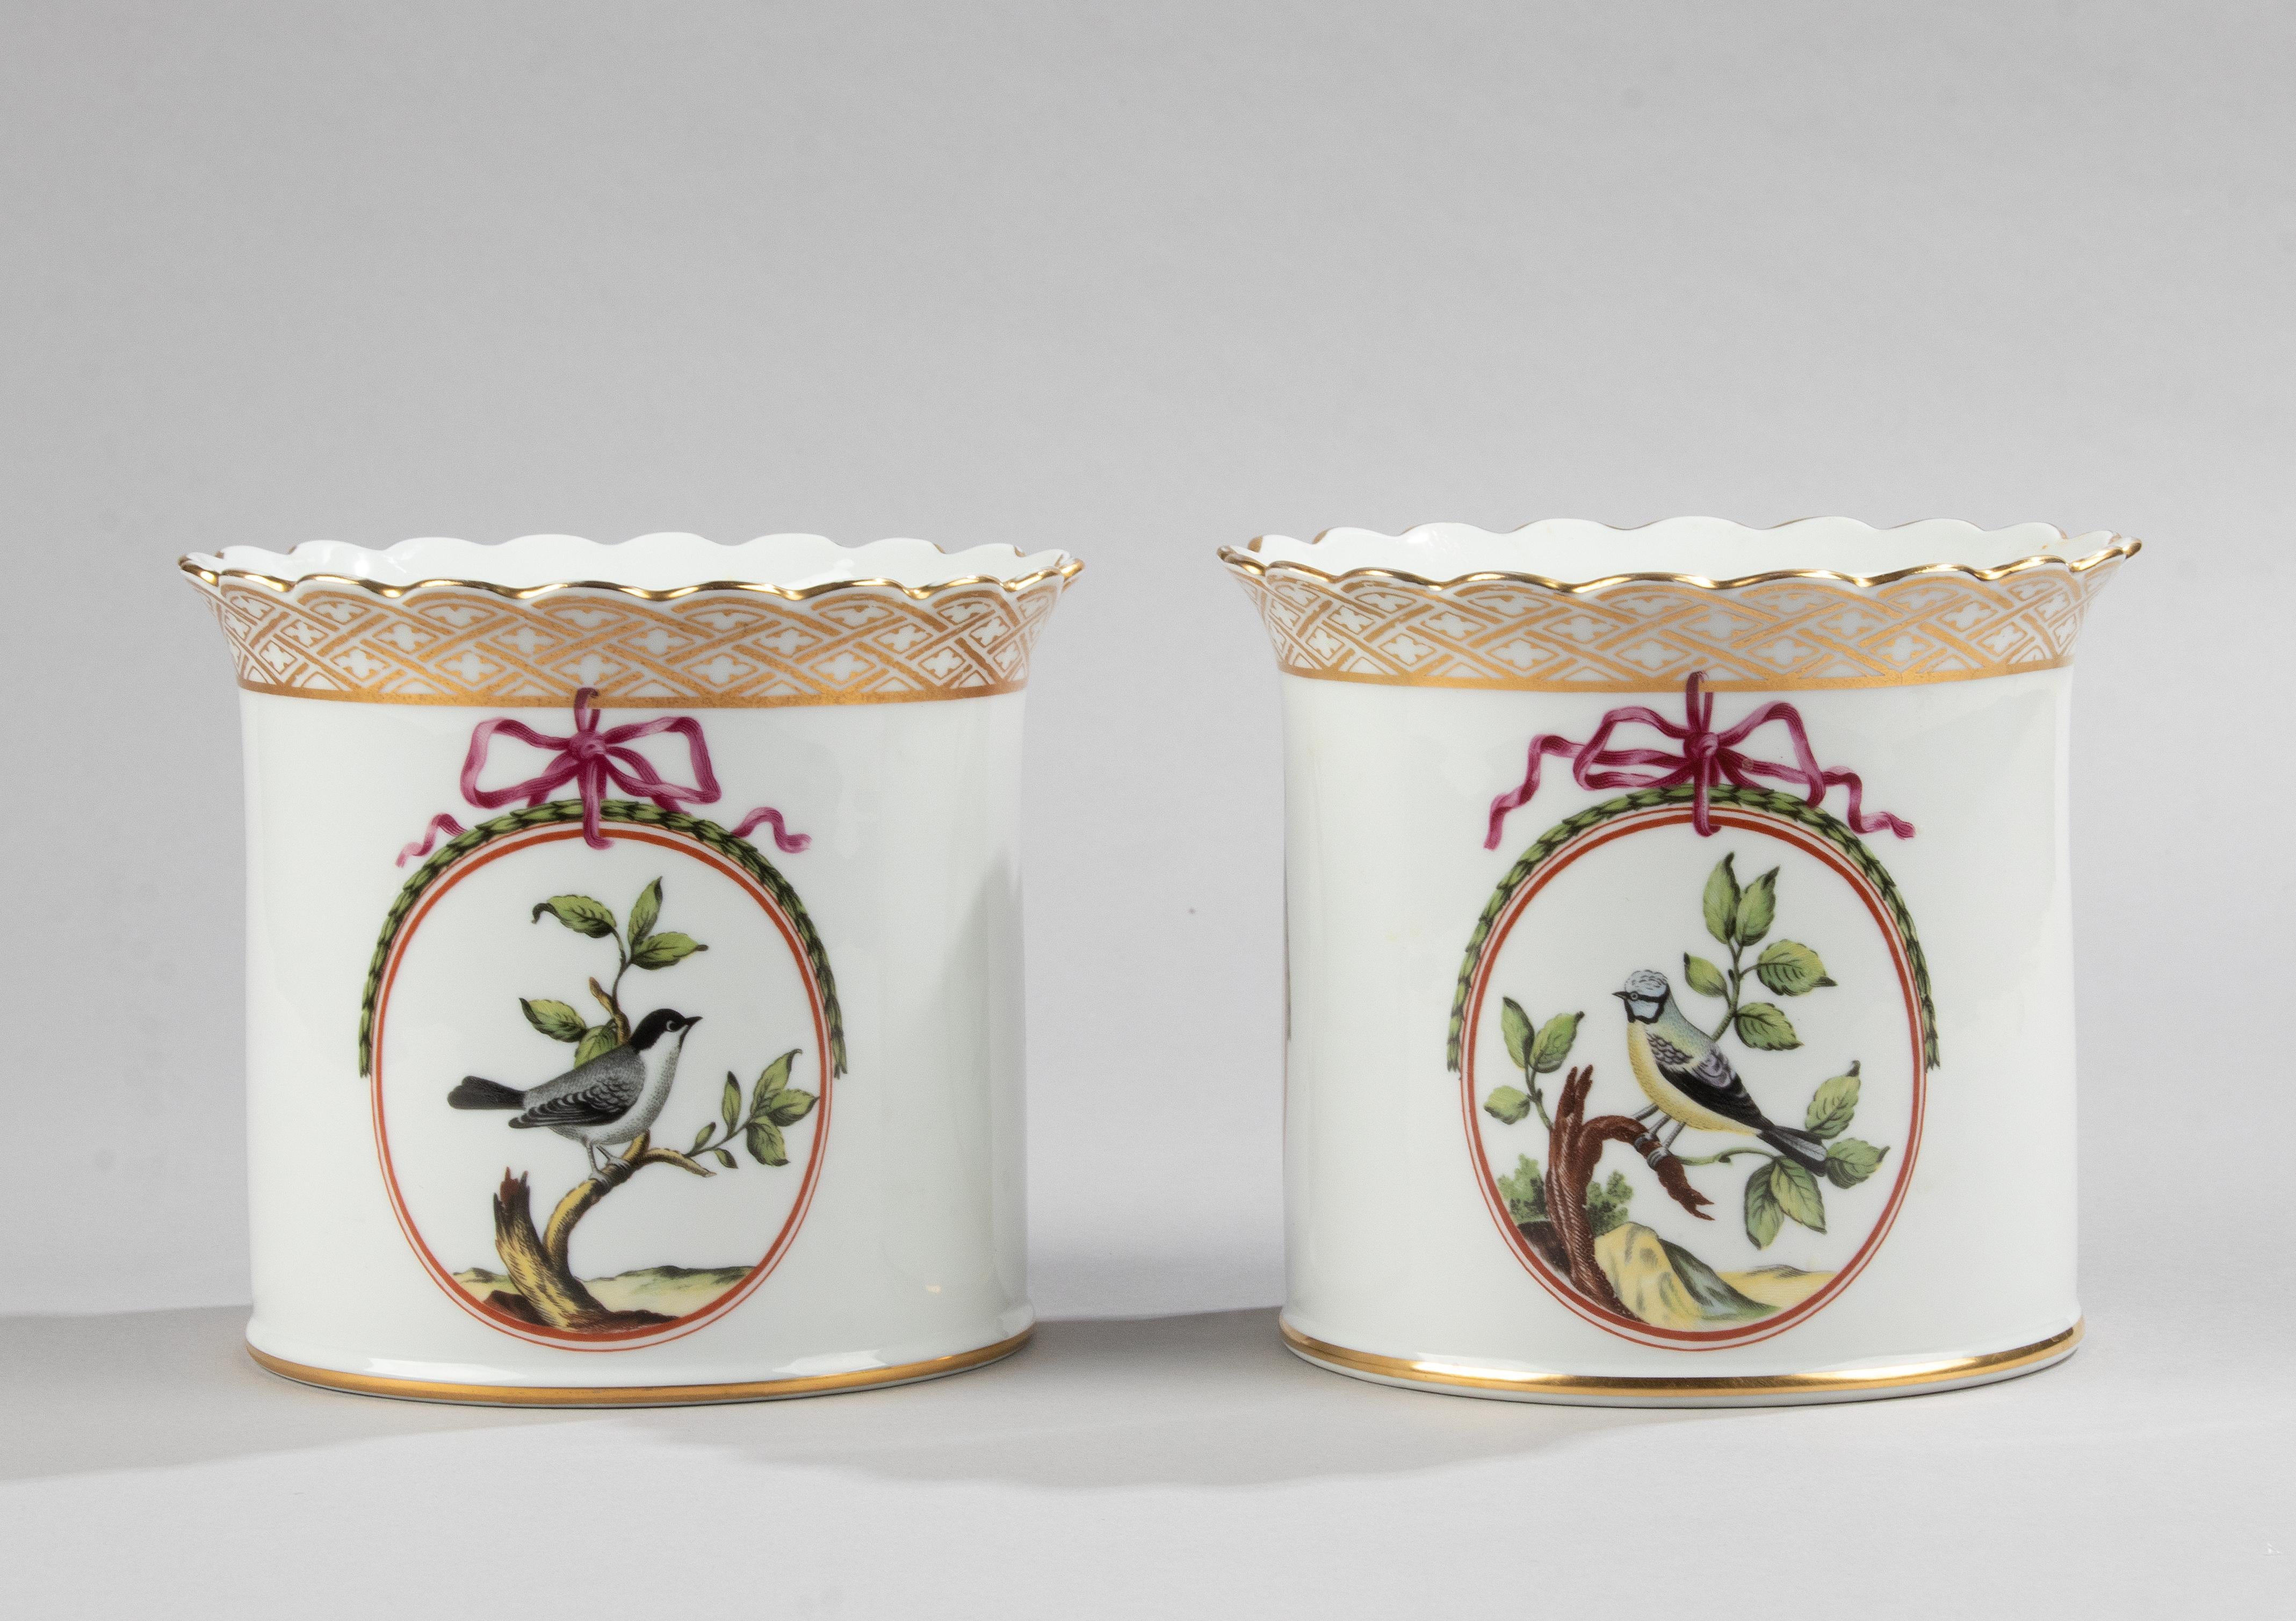 Une belle paire de jardinières / cache-pots en porcelaine, fabriqués par la marque française Haviland Limoges. 
Il s'agit de reproductions datant des années 80, les originaux datant de 1760-1780. 
La paire est en bon état. Pas d'ébréchures ni